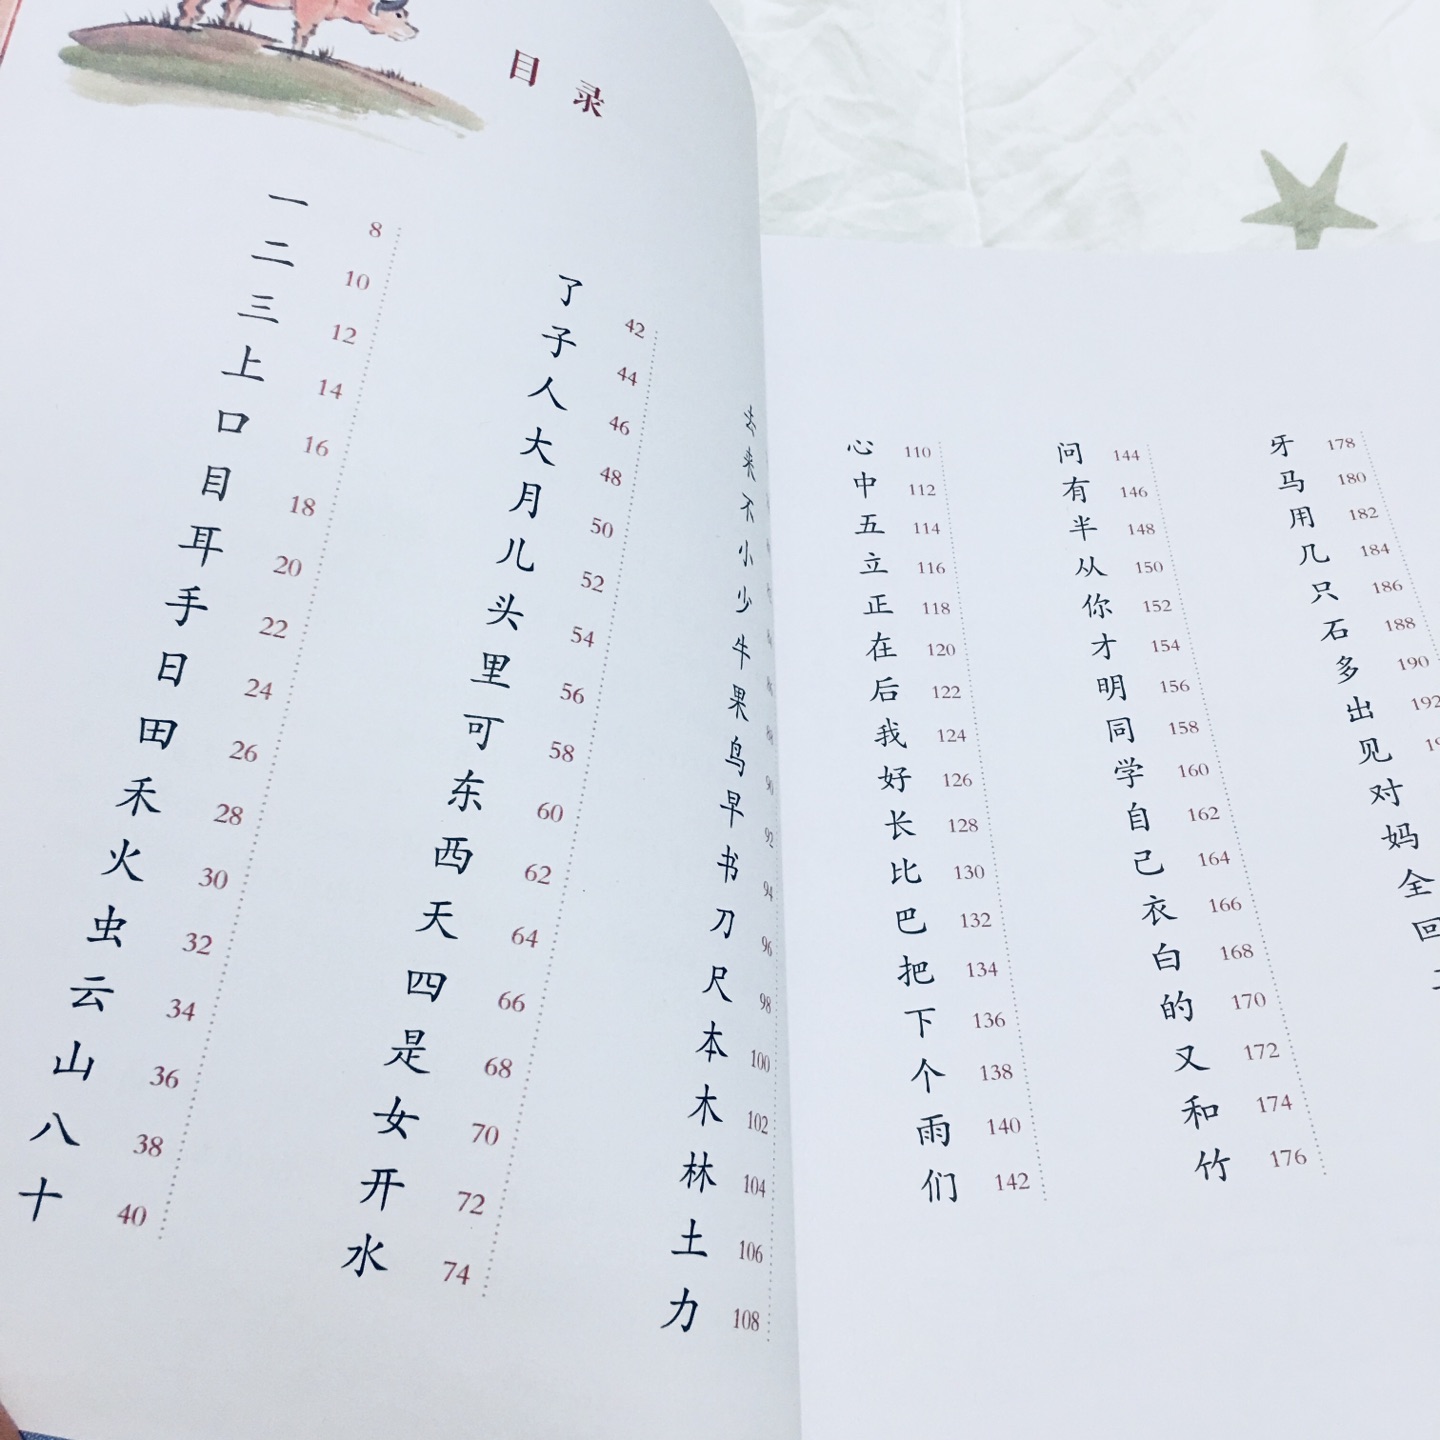 对照了一下，这套书的汉字完全和人教版的识字顺序一致，方便孩子随课阅读，加深理解。里面还加入了很多典故、成语、诗词等，内容丰富，印刷质量也很好！